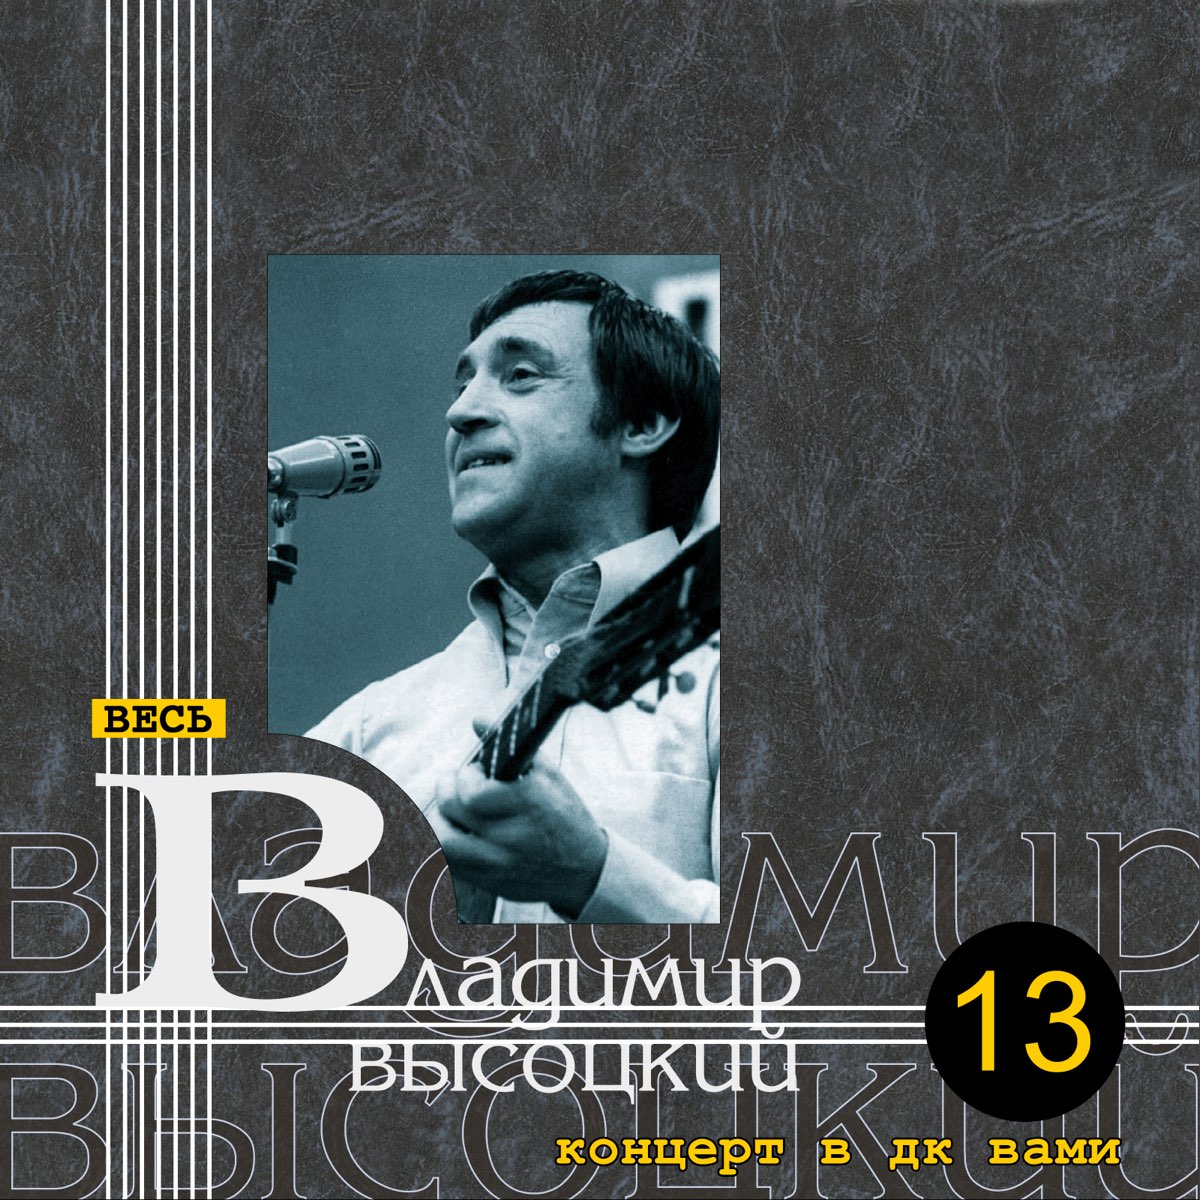 Владимир Высоцкий - концерт в ДК.вами (1974)